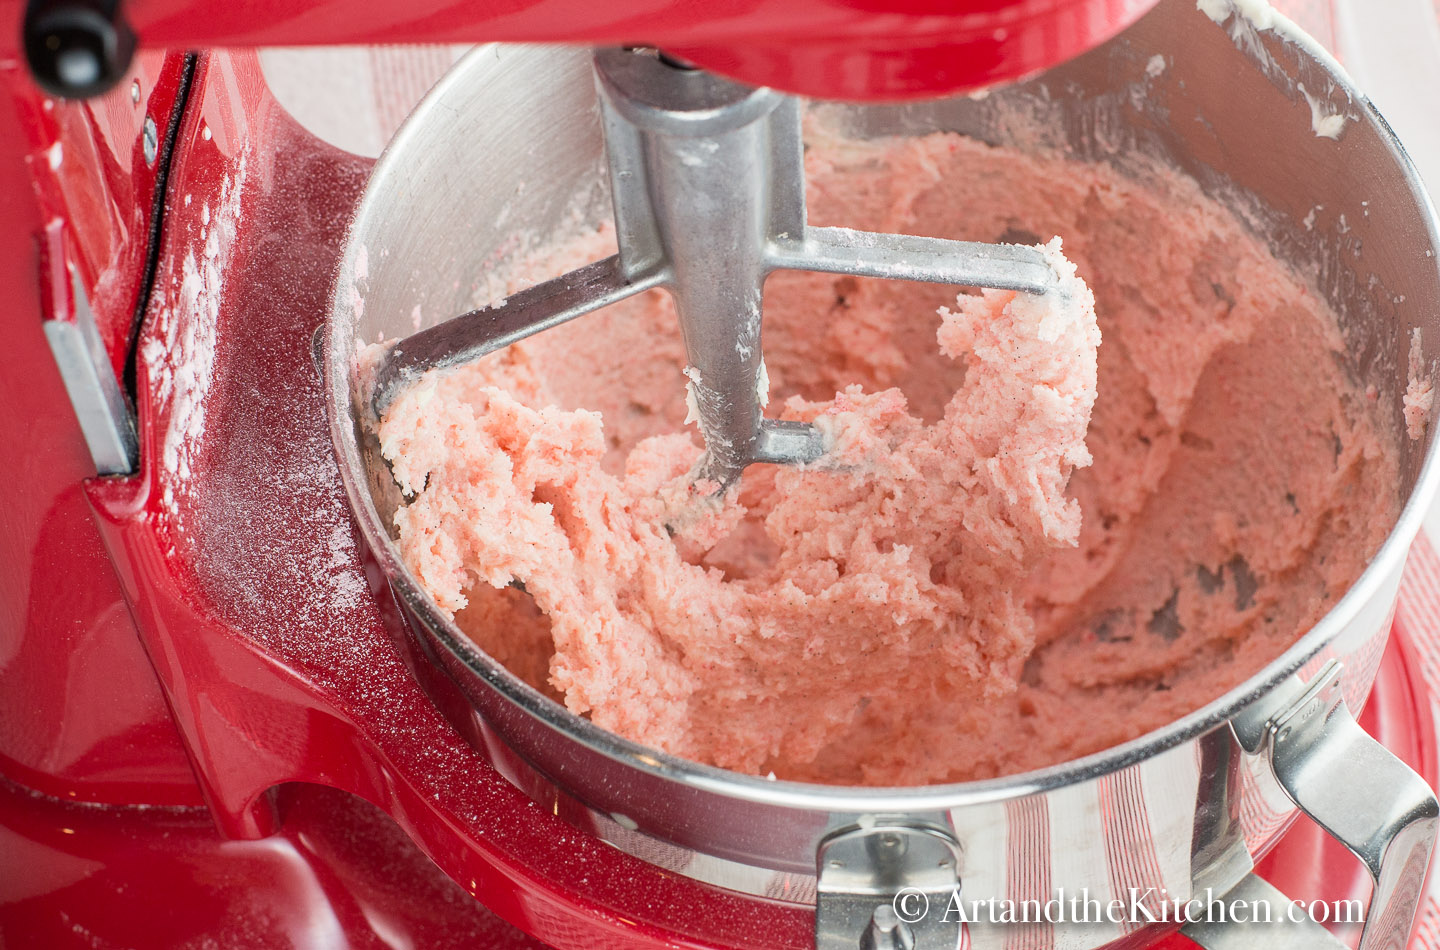 Electric mixer beating pink sugar cookie dough.